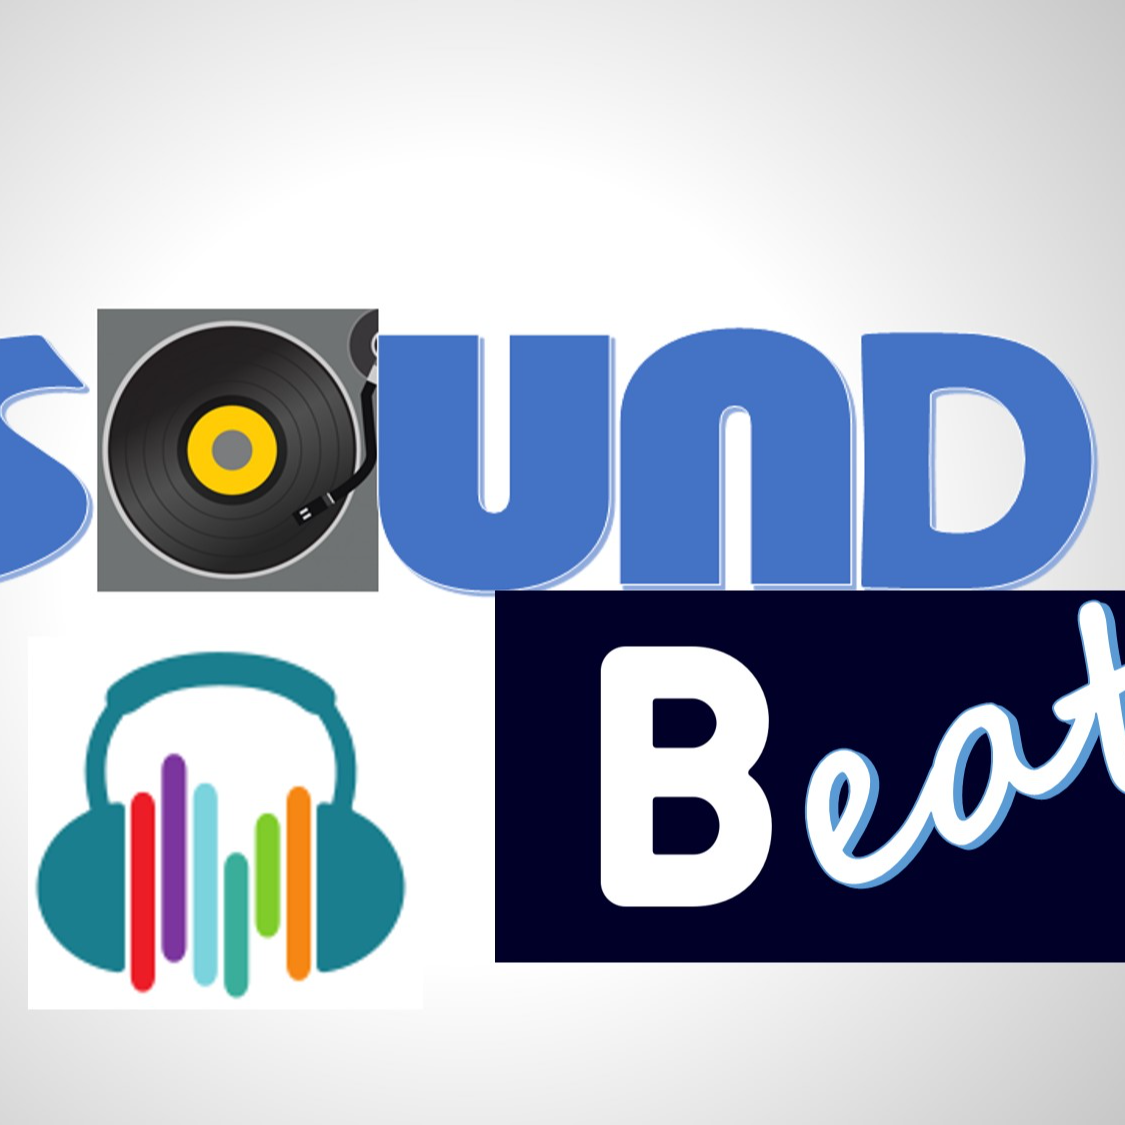 soundbeat